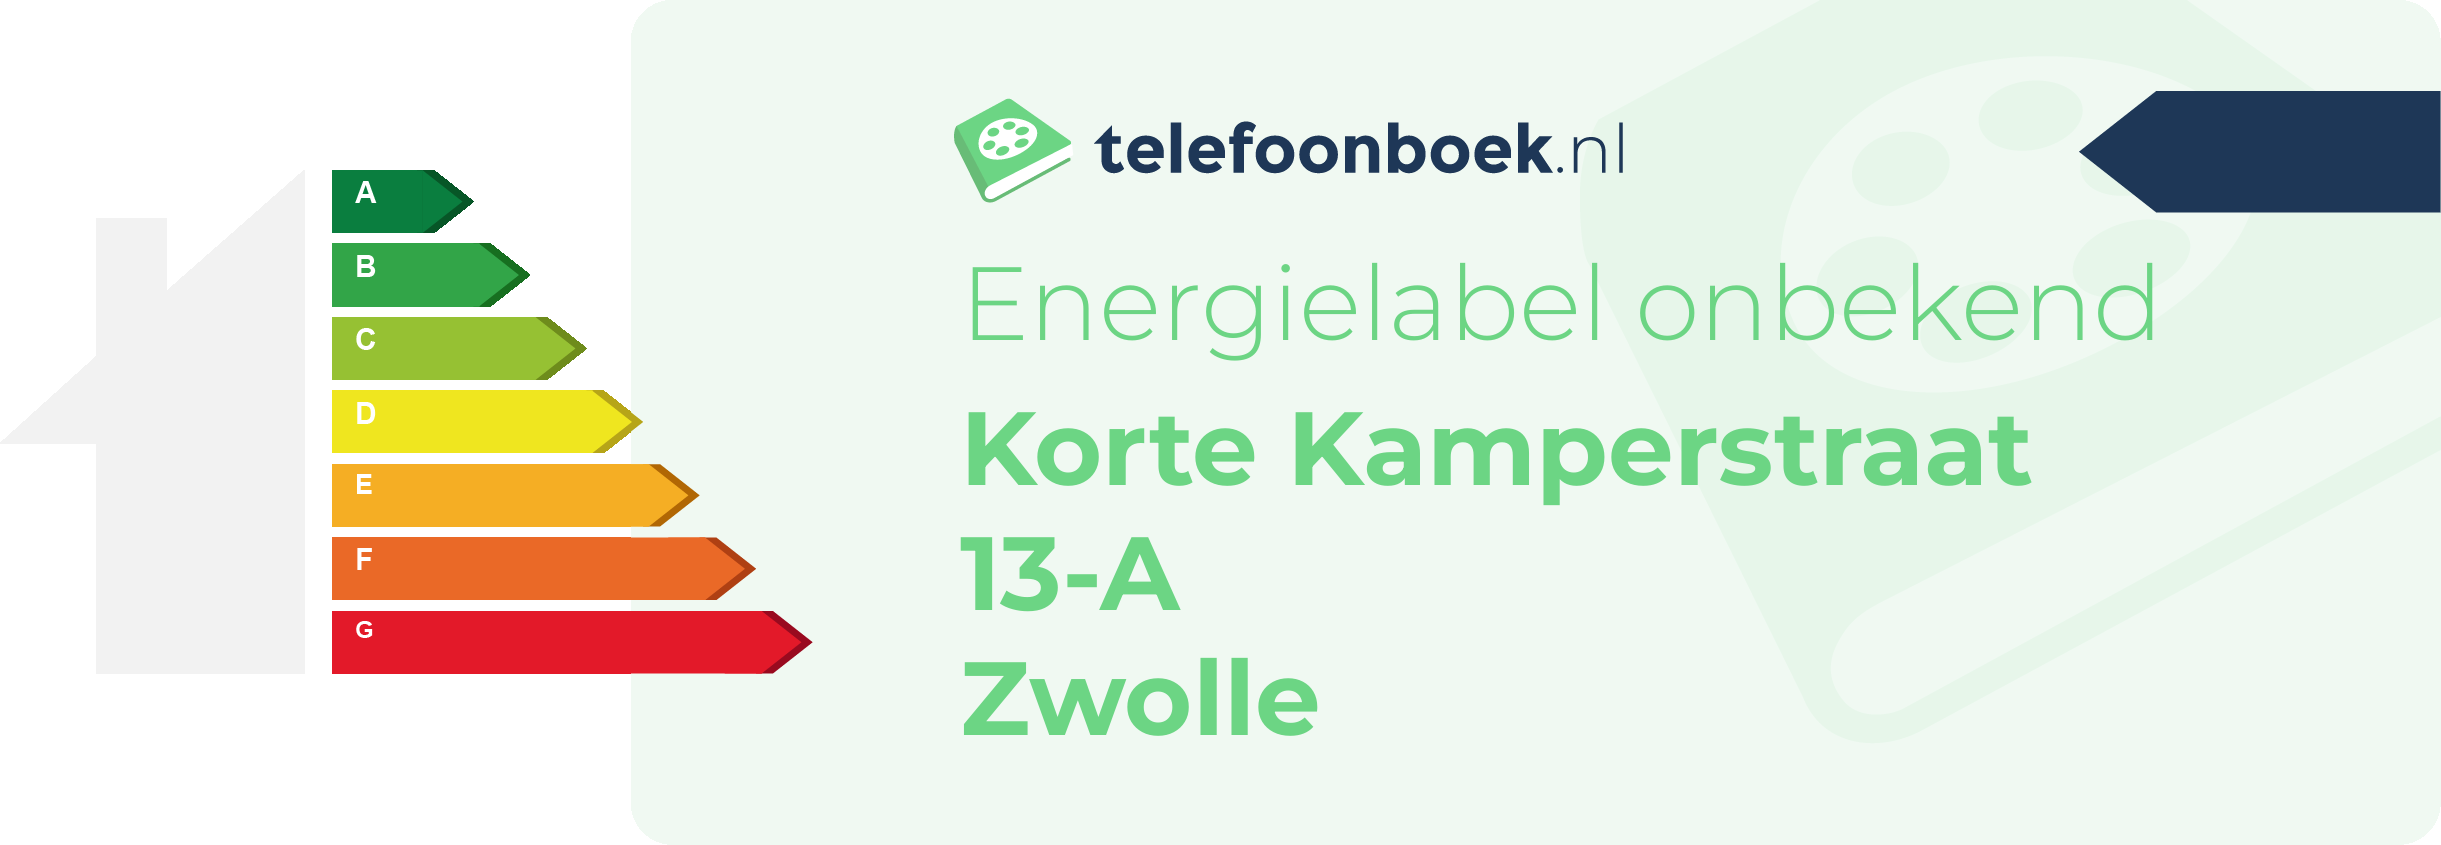 Energielabel Korte Kamperstraat 13-A Zwolle